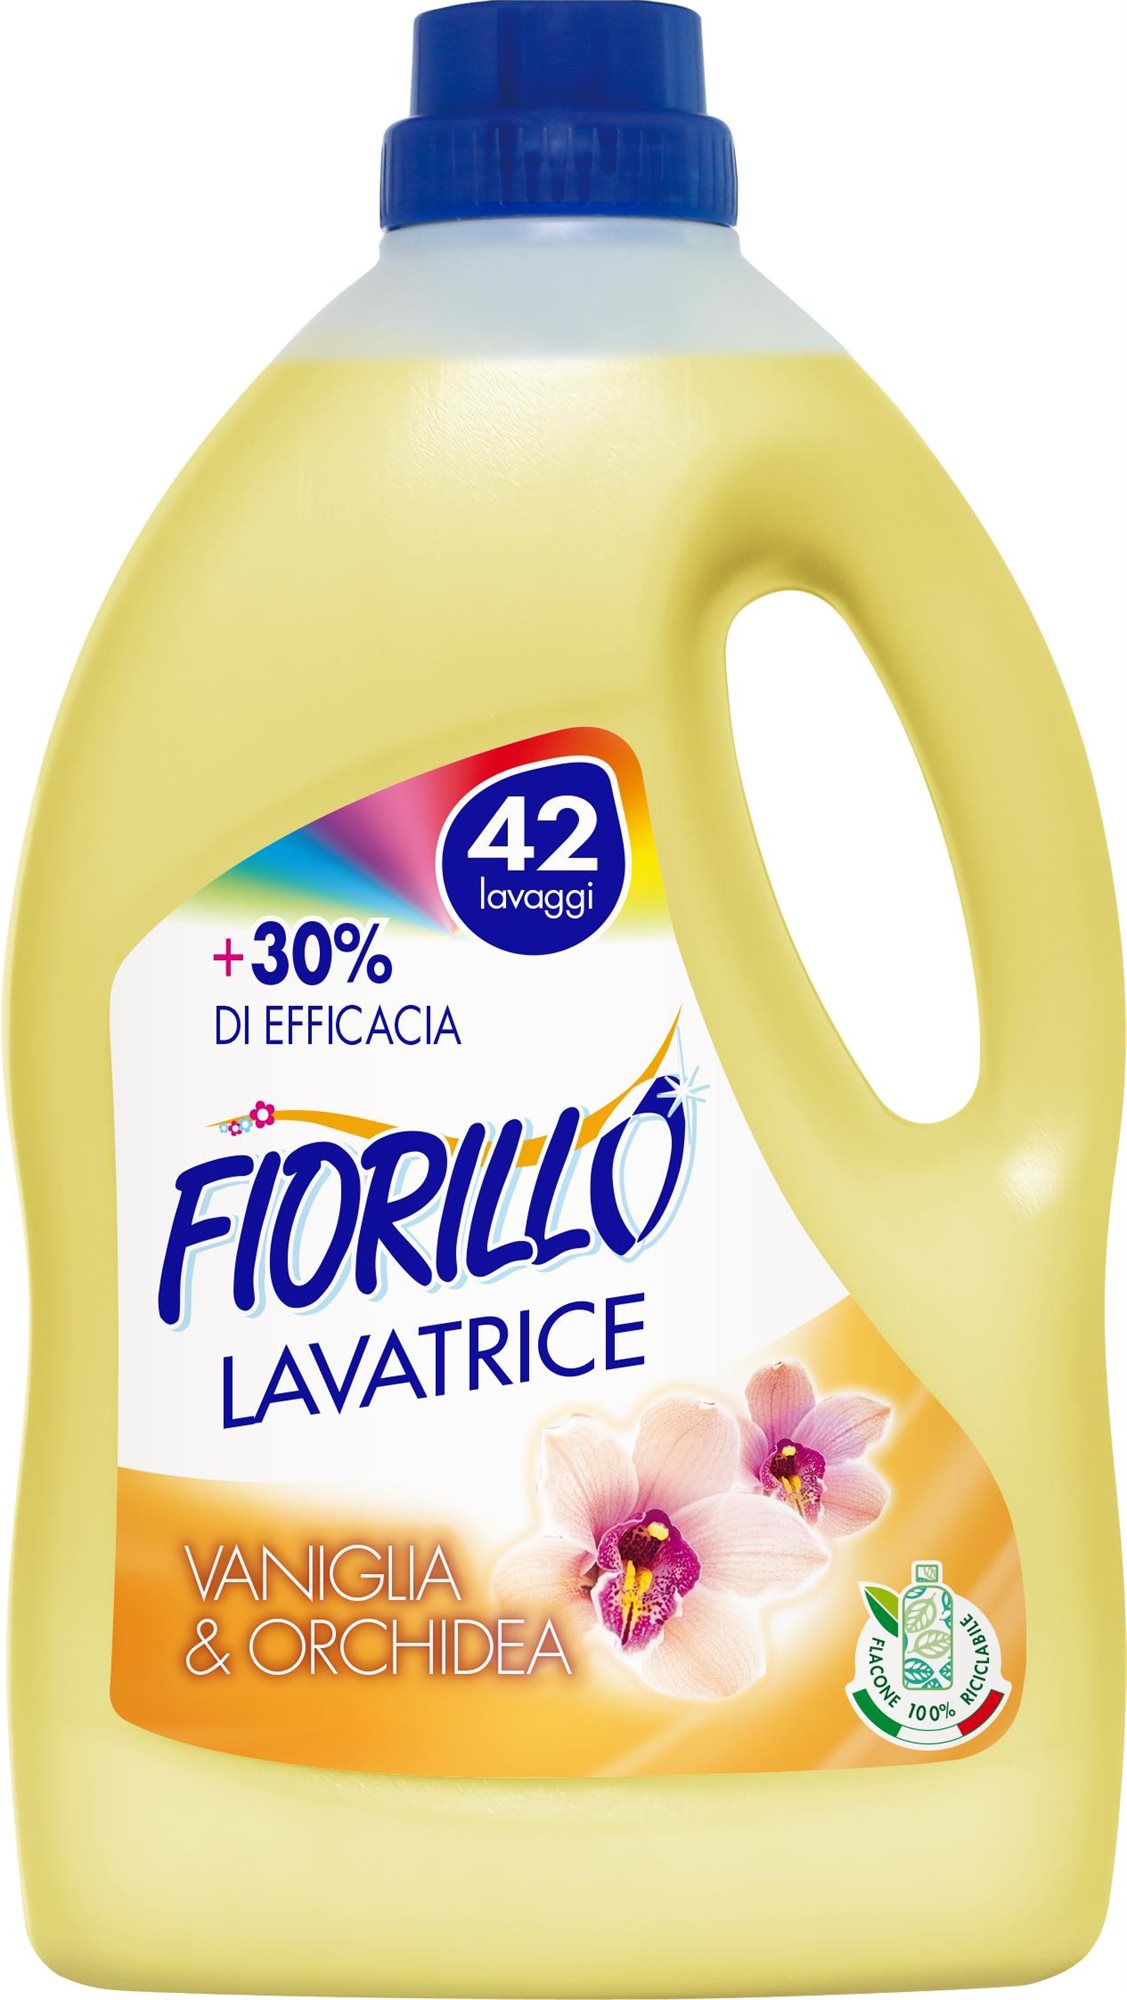 Prací gel FIORILLO Lavatricie Vaniglia e Orchidea 2